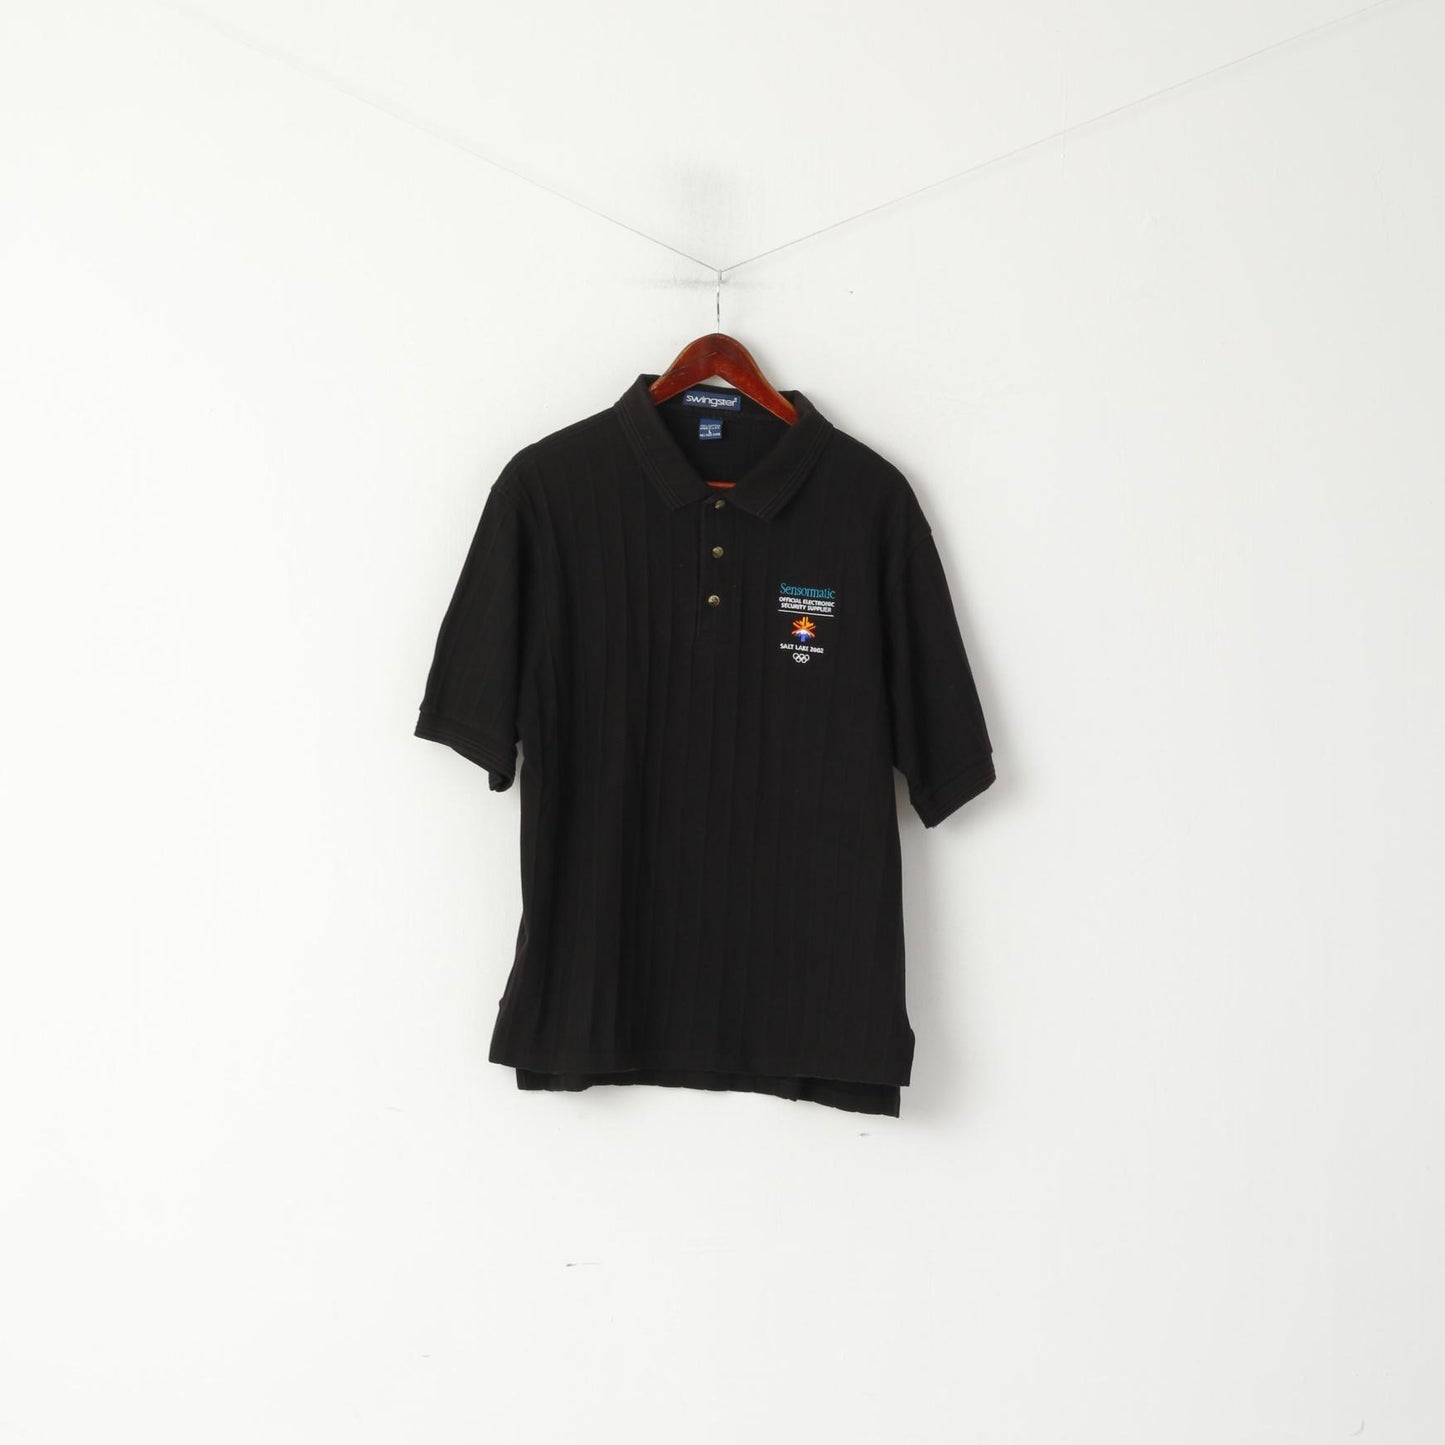 Polo Swingster da uomo L in cotone nero, maglia olimpica a maniche corte di Salt Lake City 2002